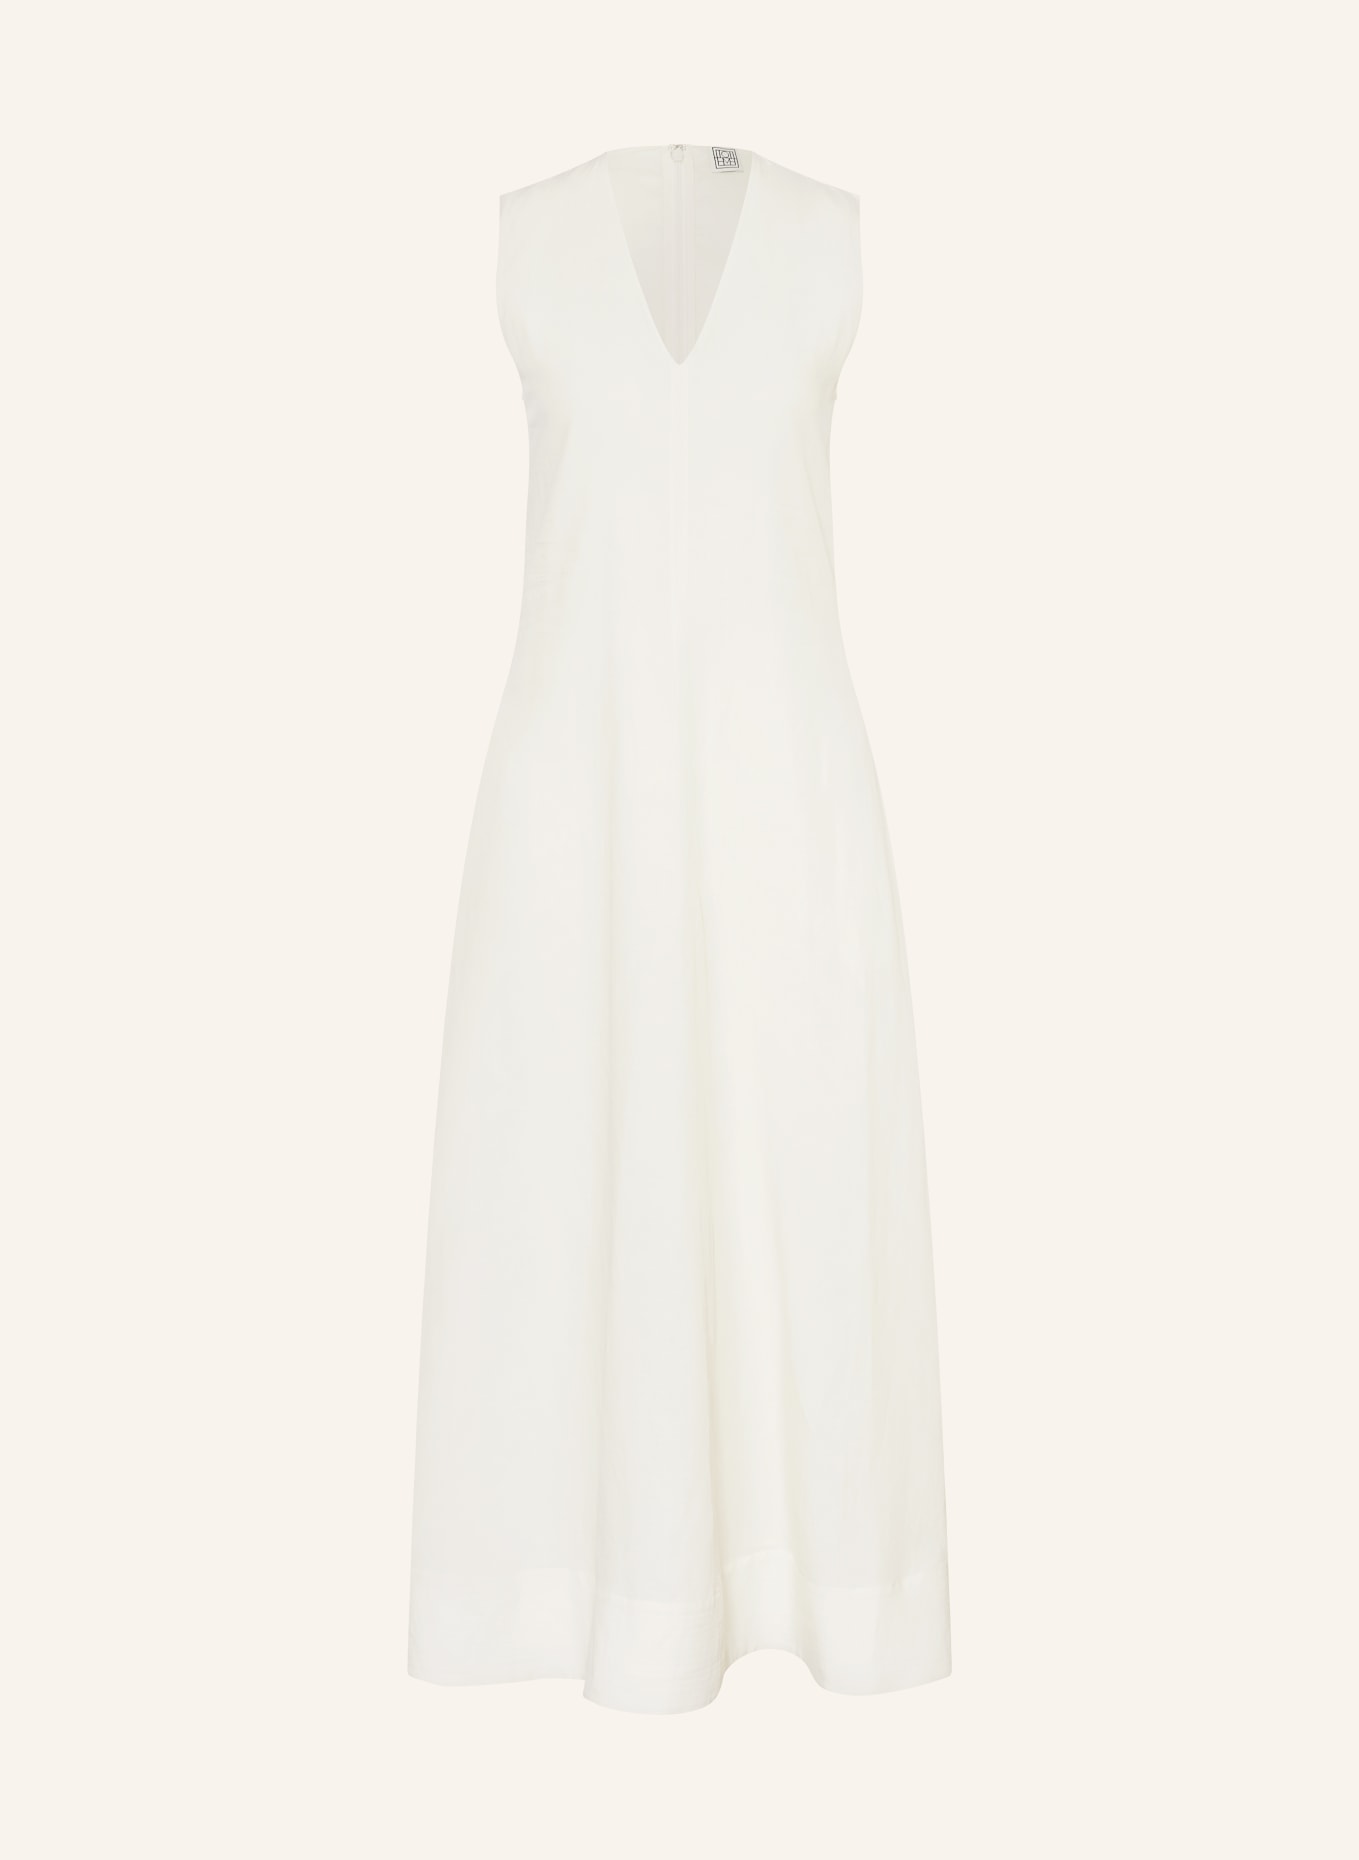 TOTEME Kleid, Farbe: WEISS (Bild 1)